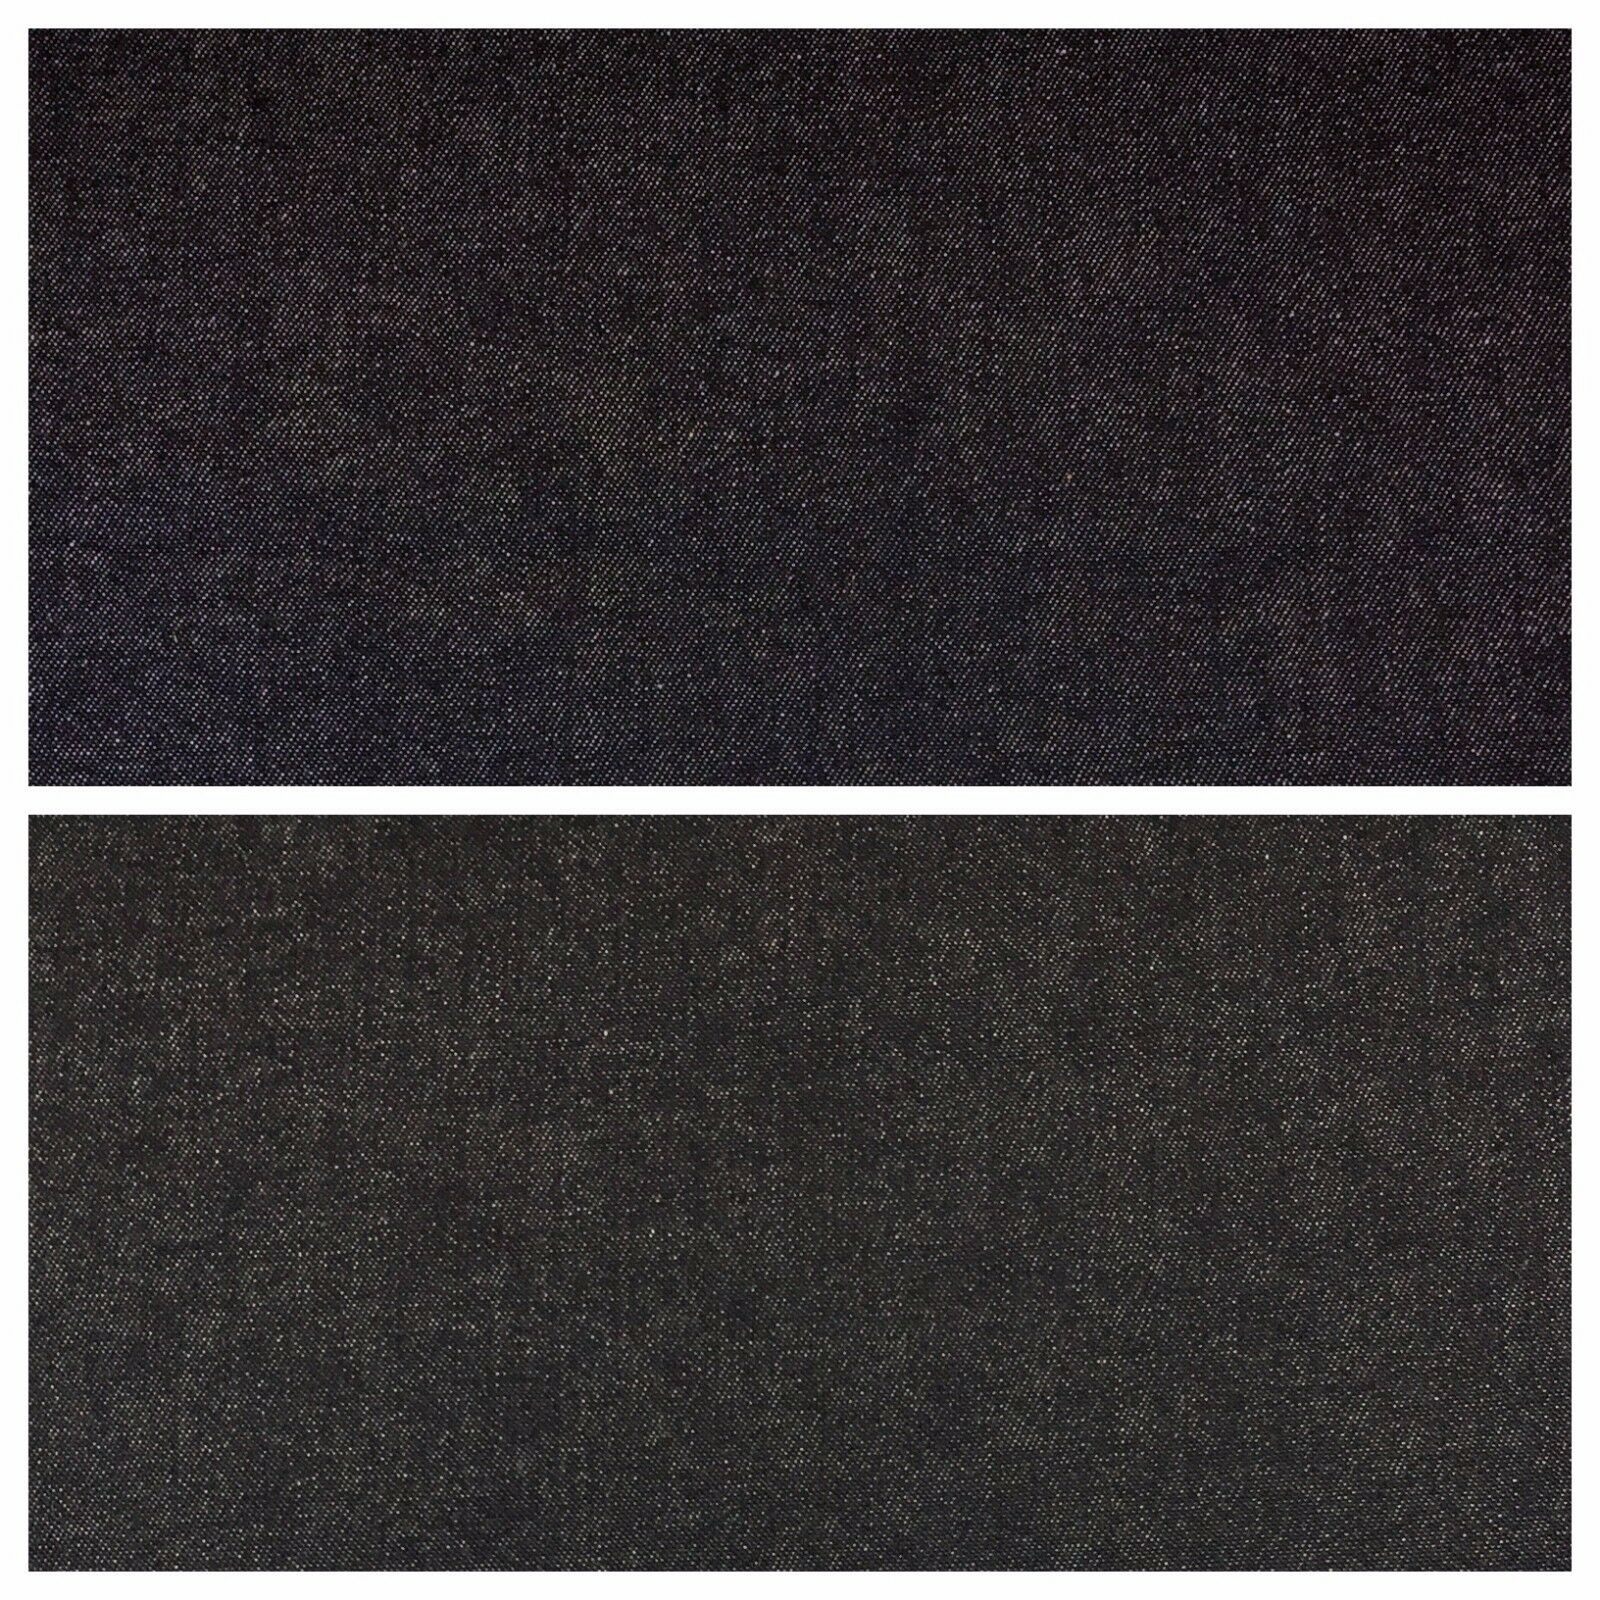 7.5oz Indigo-Black Denim Midweight 100% Cotton Fabric 58"Wide  M612 Mtex